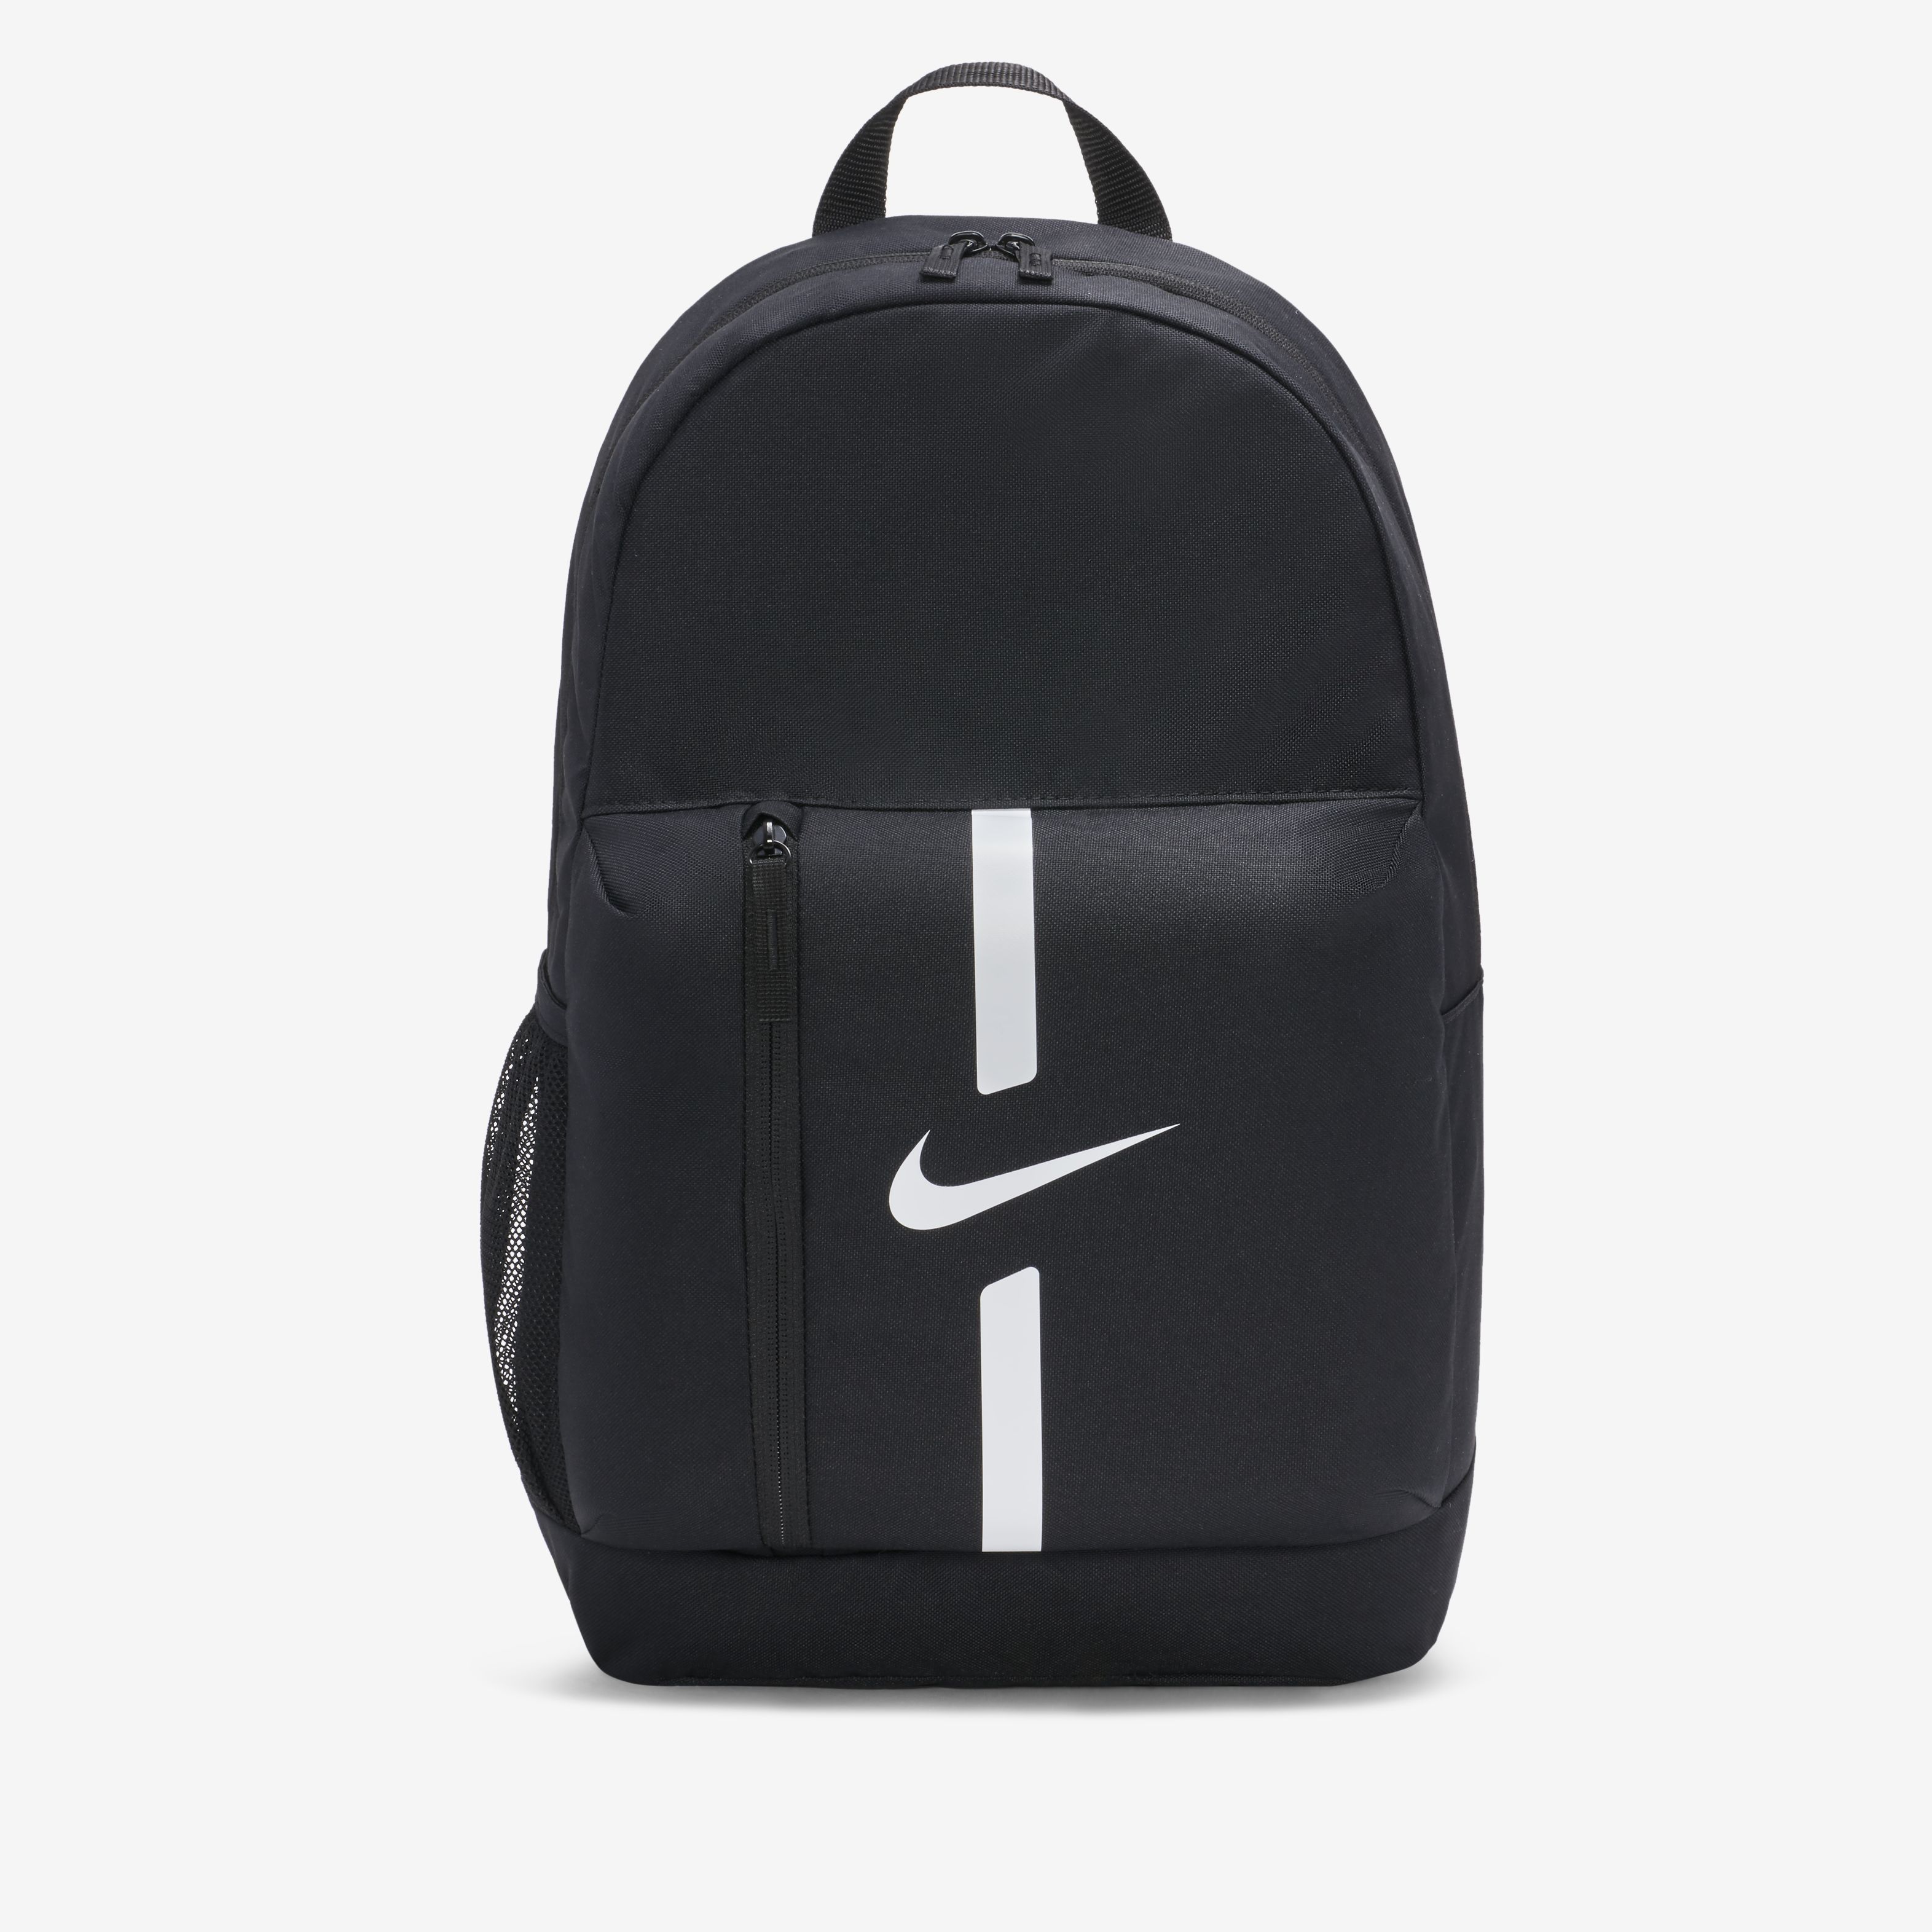 Nike Academy Team - bolsos-mochilas - Nike - Argentina | Tienda oficial